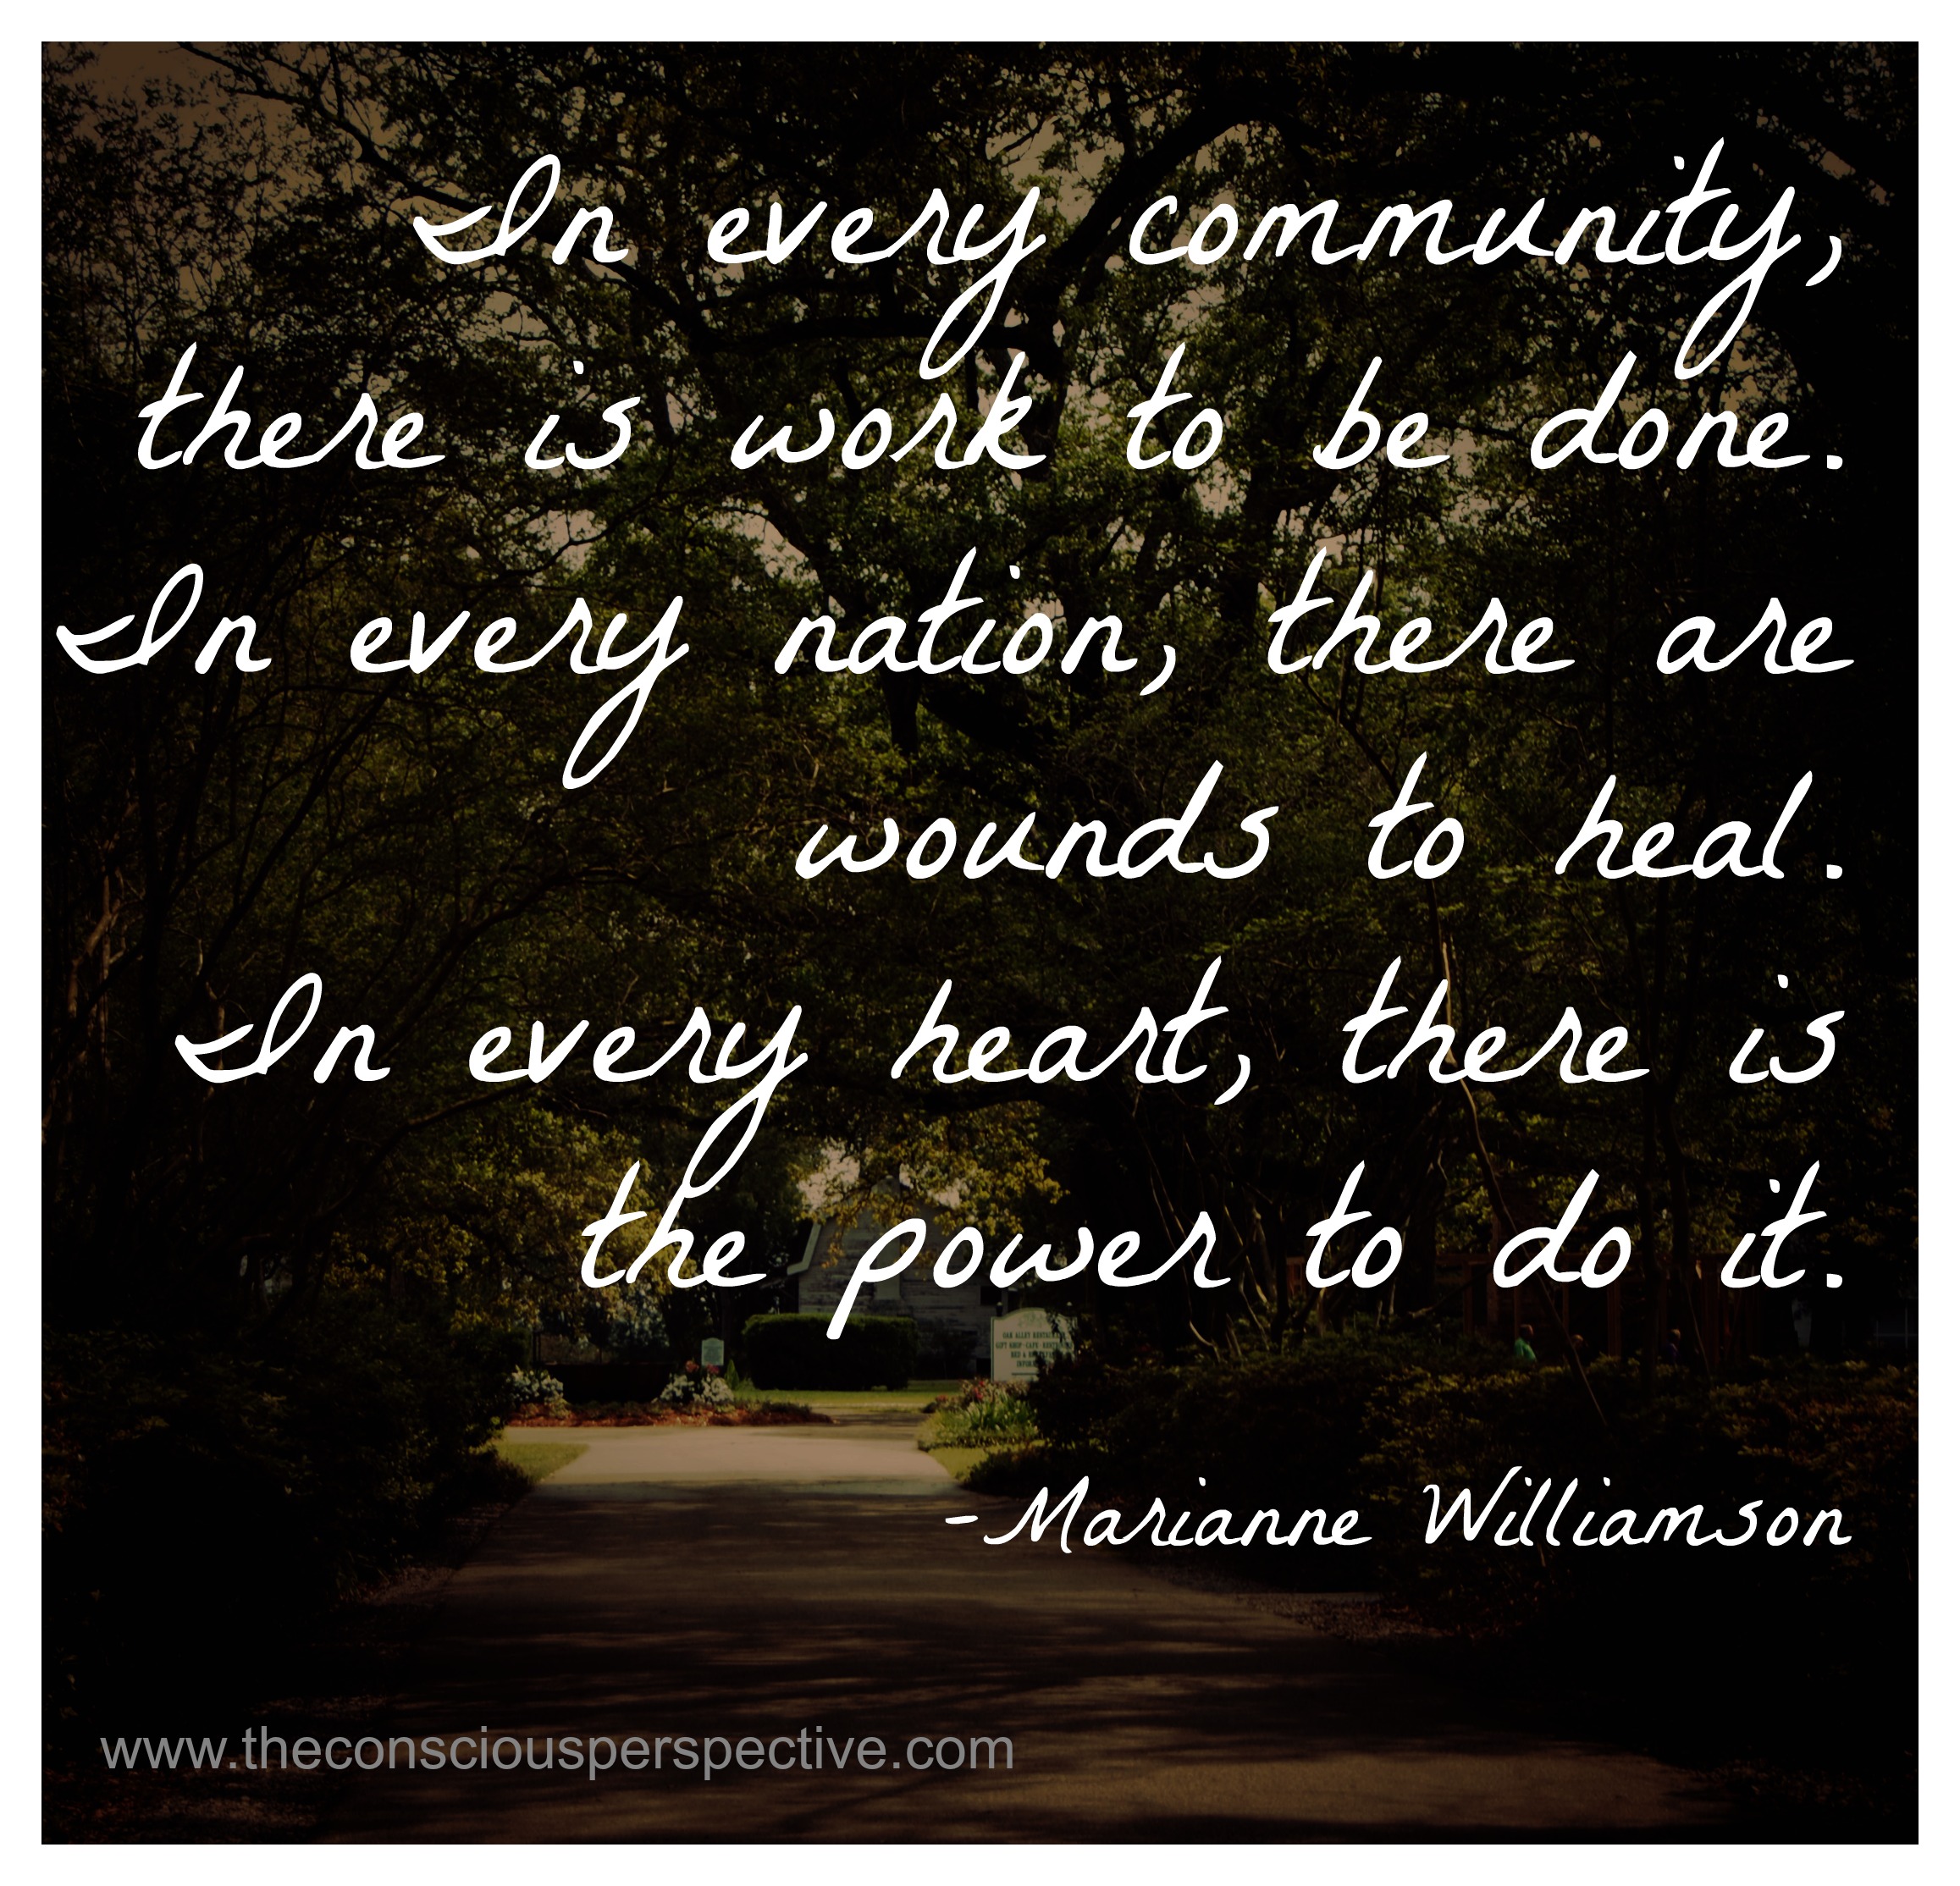 Marianne Williamson's quote